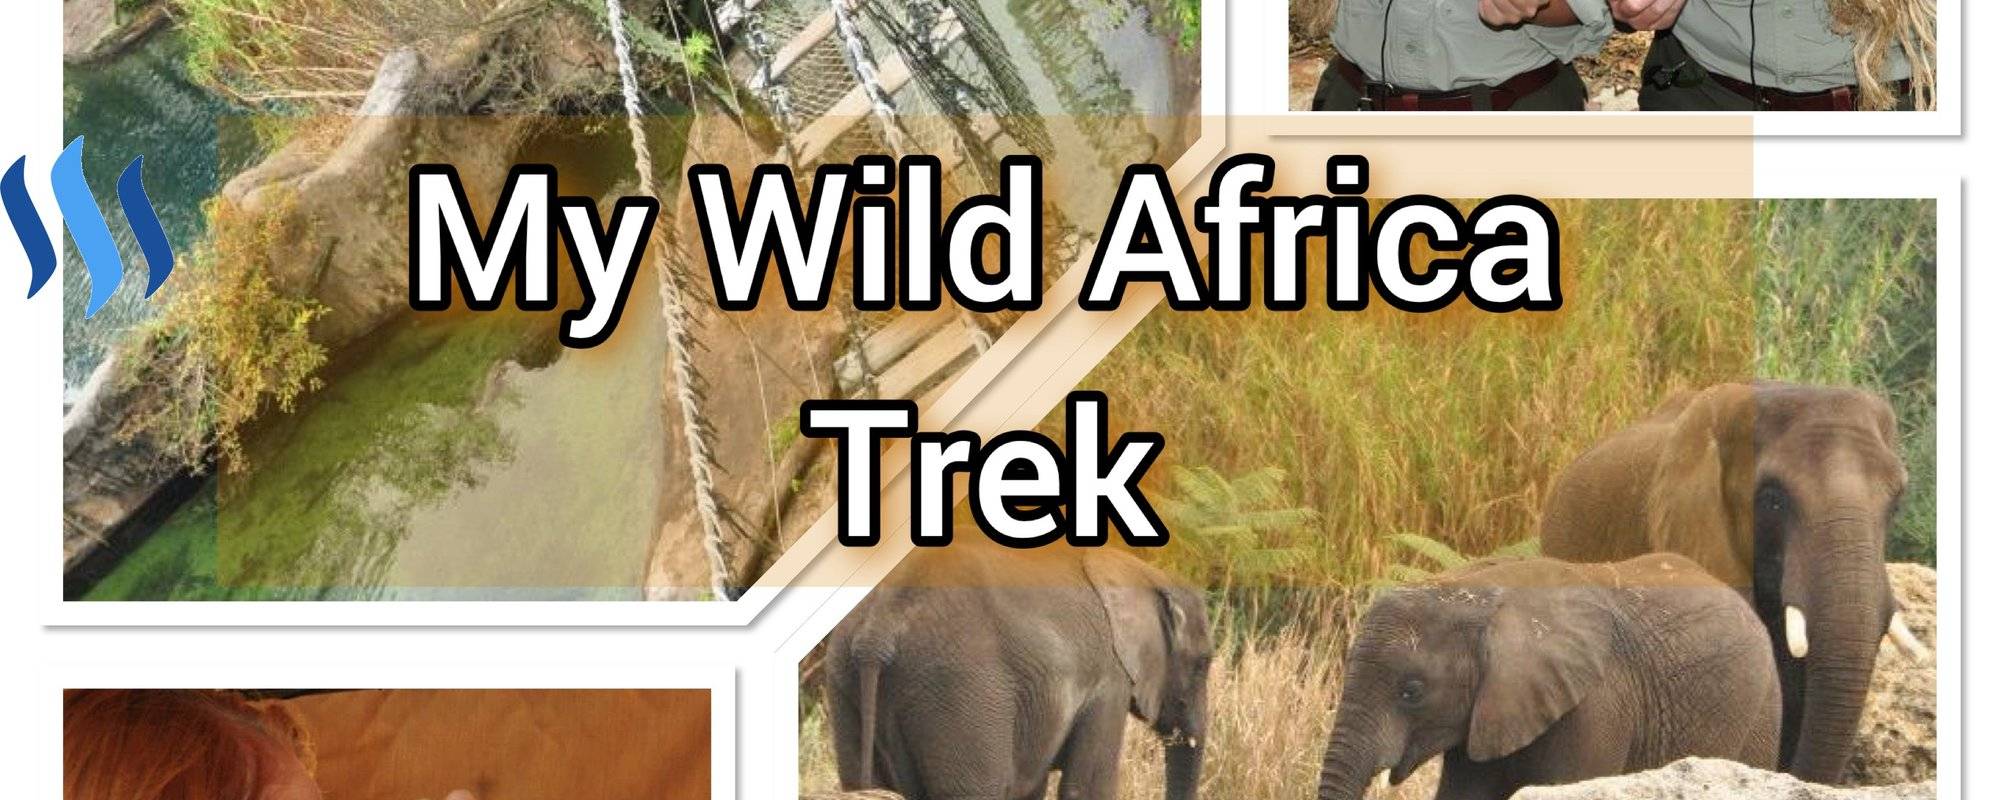 My Wild Africa Trek - Travel #42